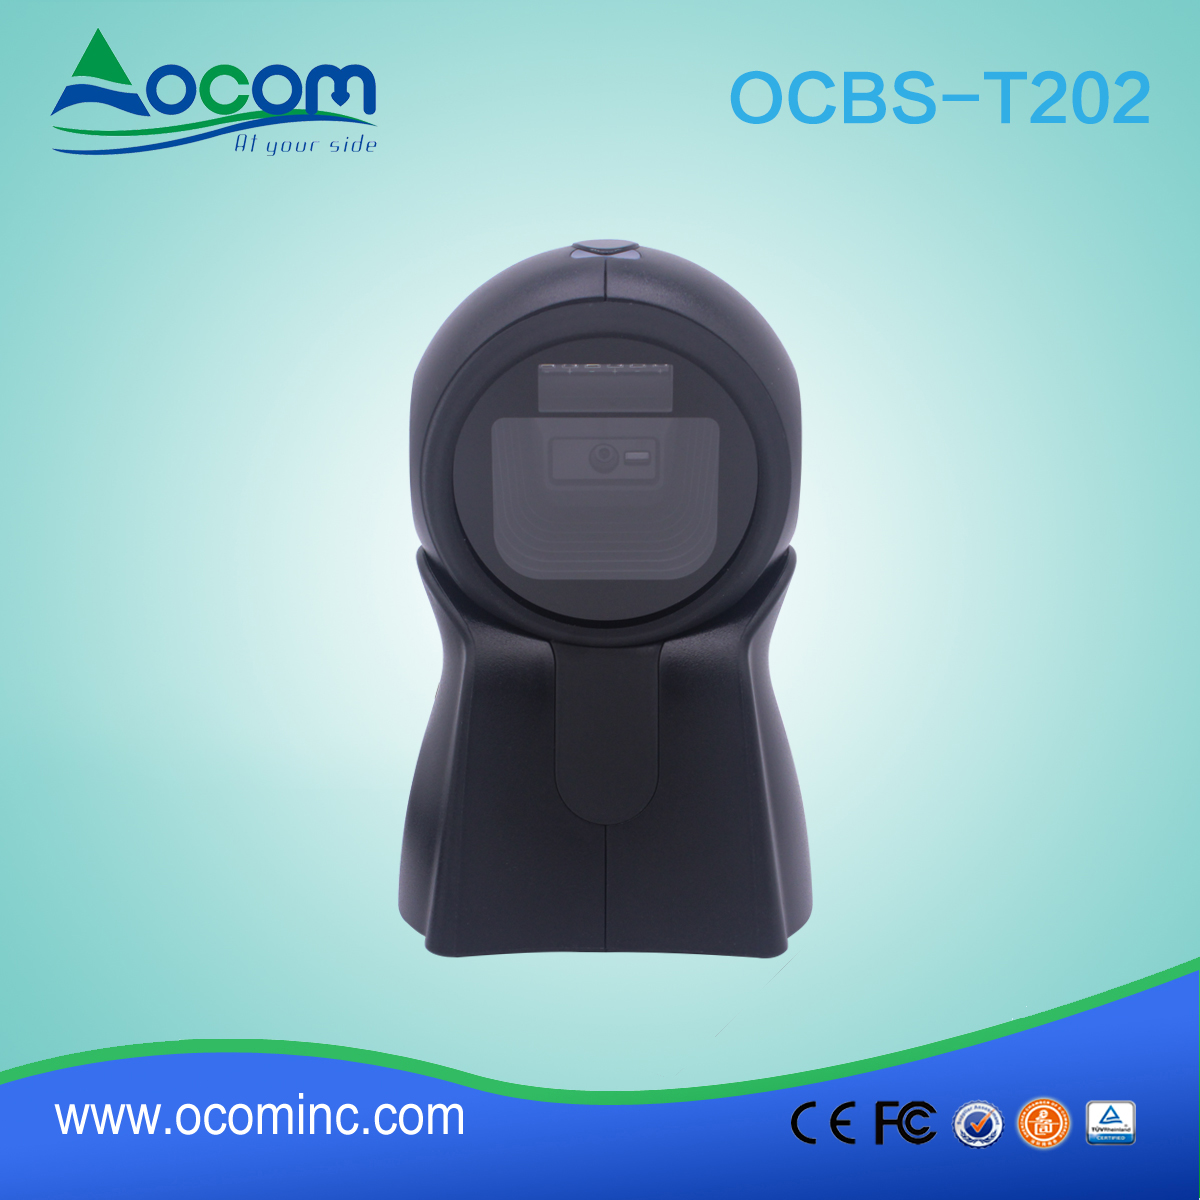 OCBS-T202 Bild 2D QR Code Omni Directional Barcode Scanner